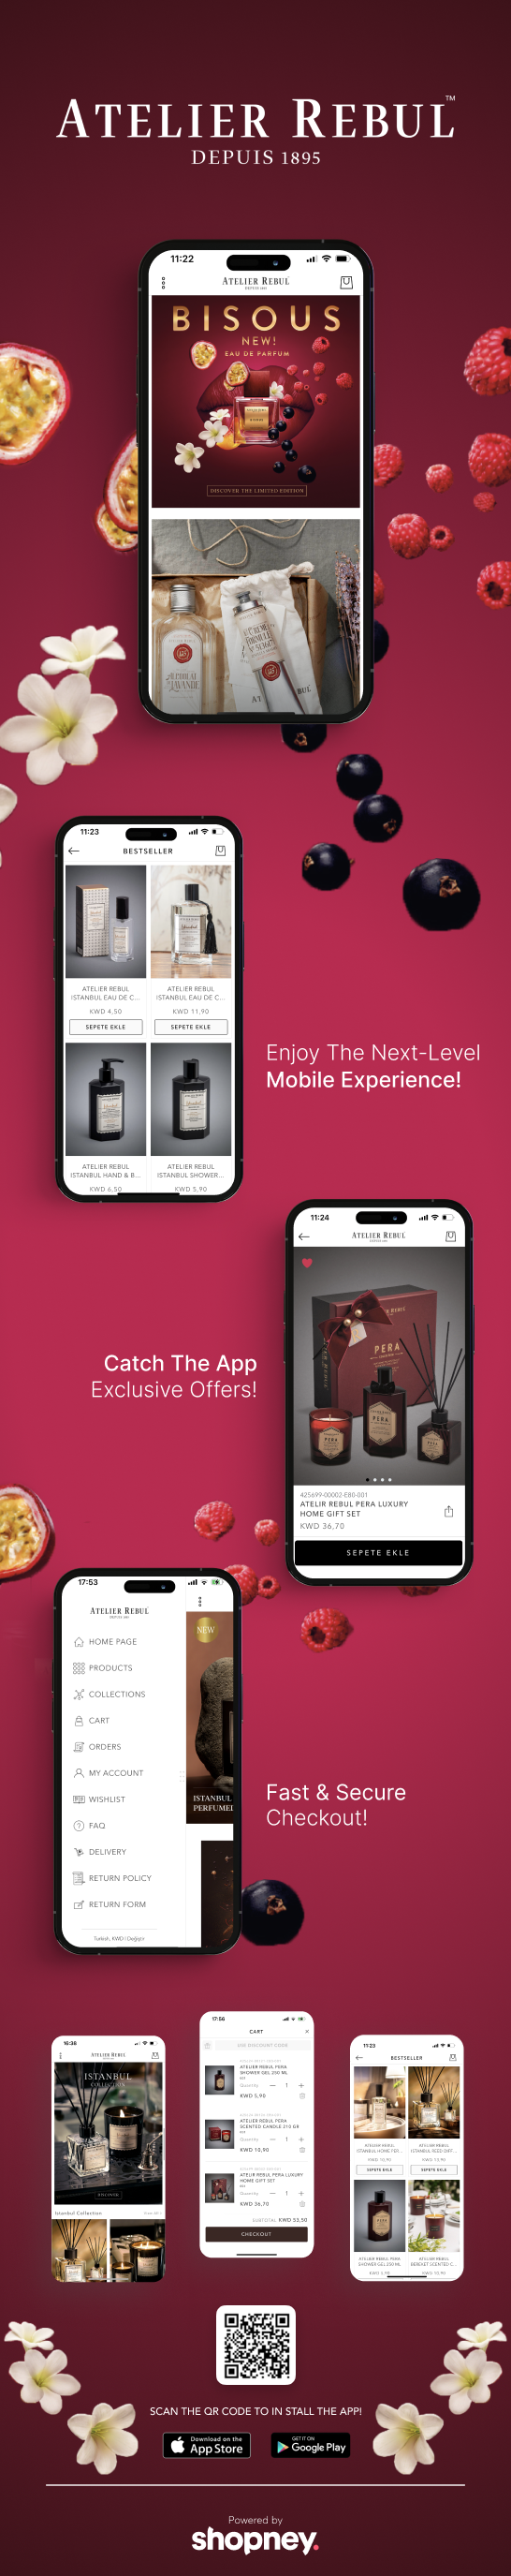 the mobile app design of Atelier Rebul KWT app